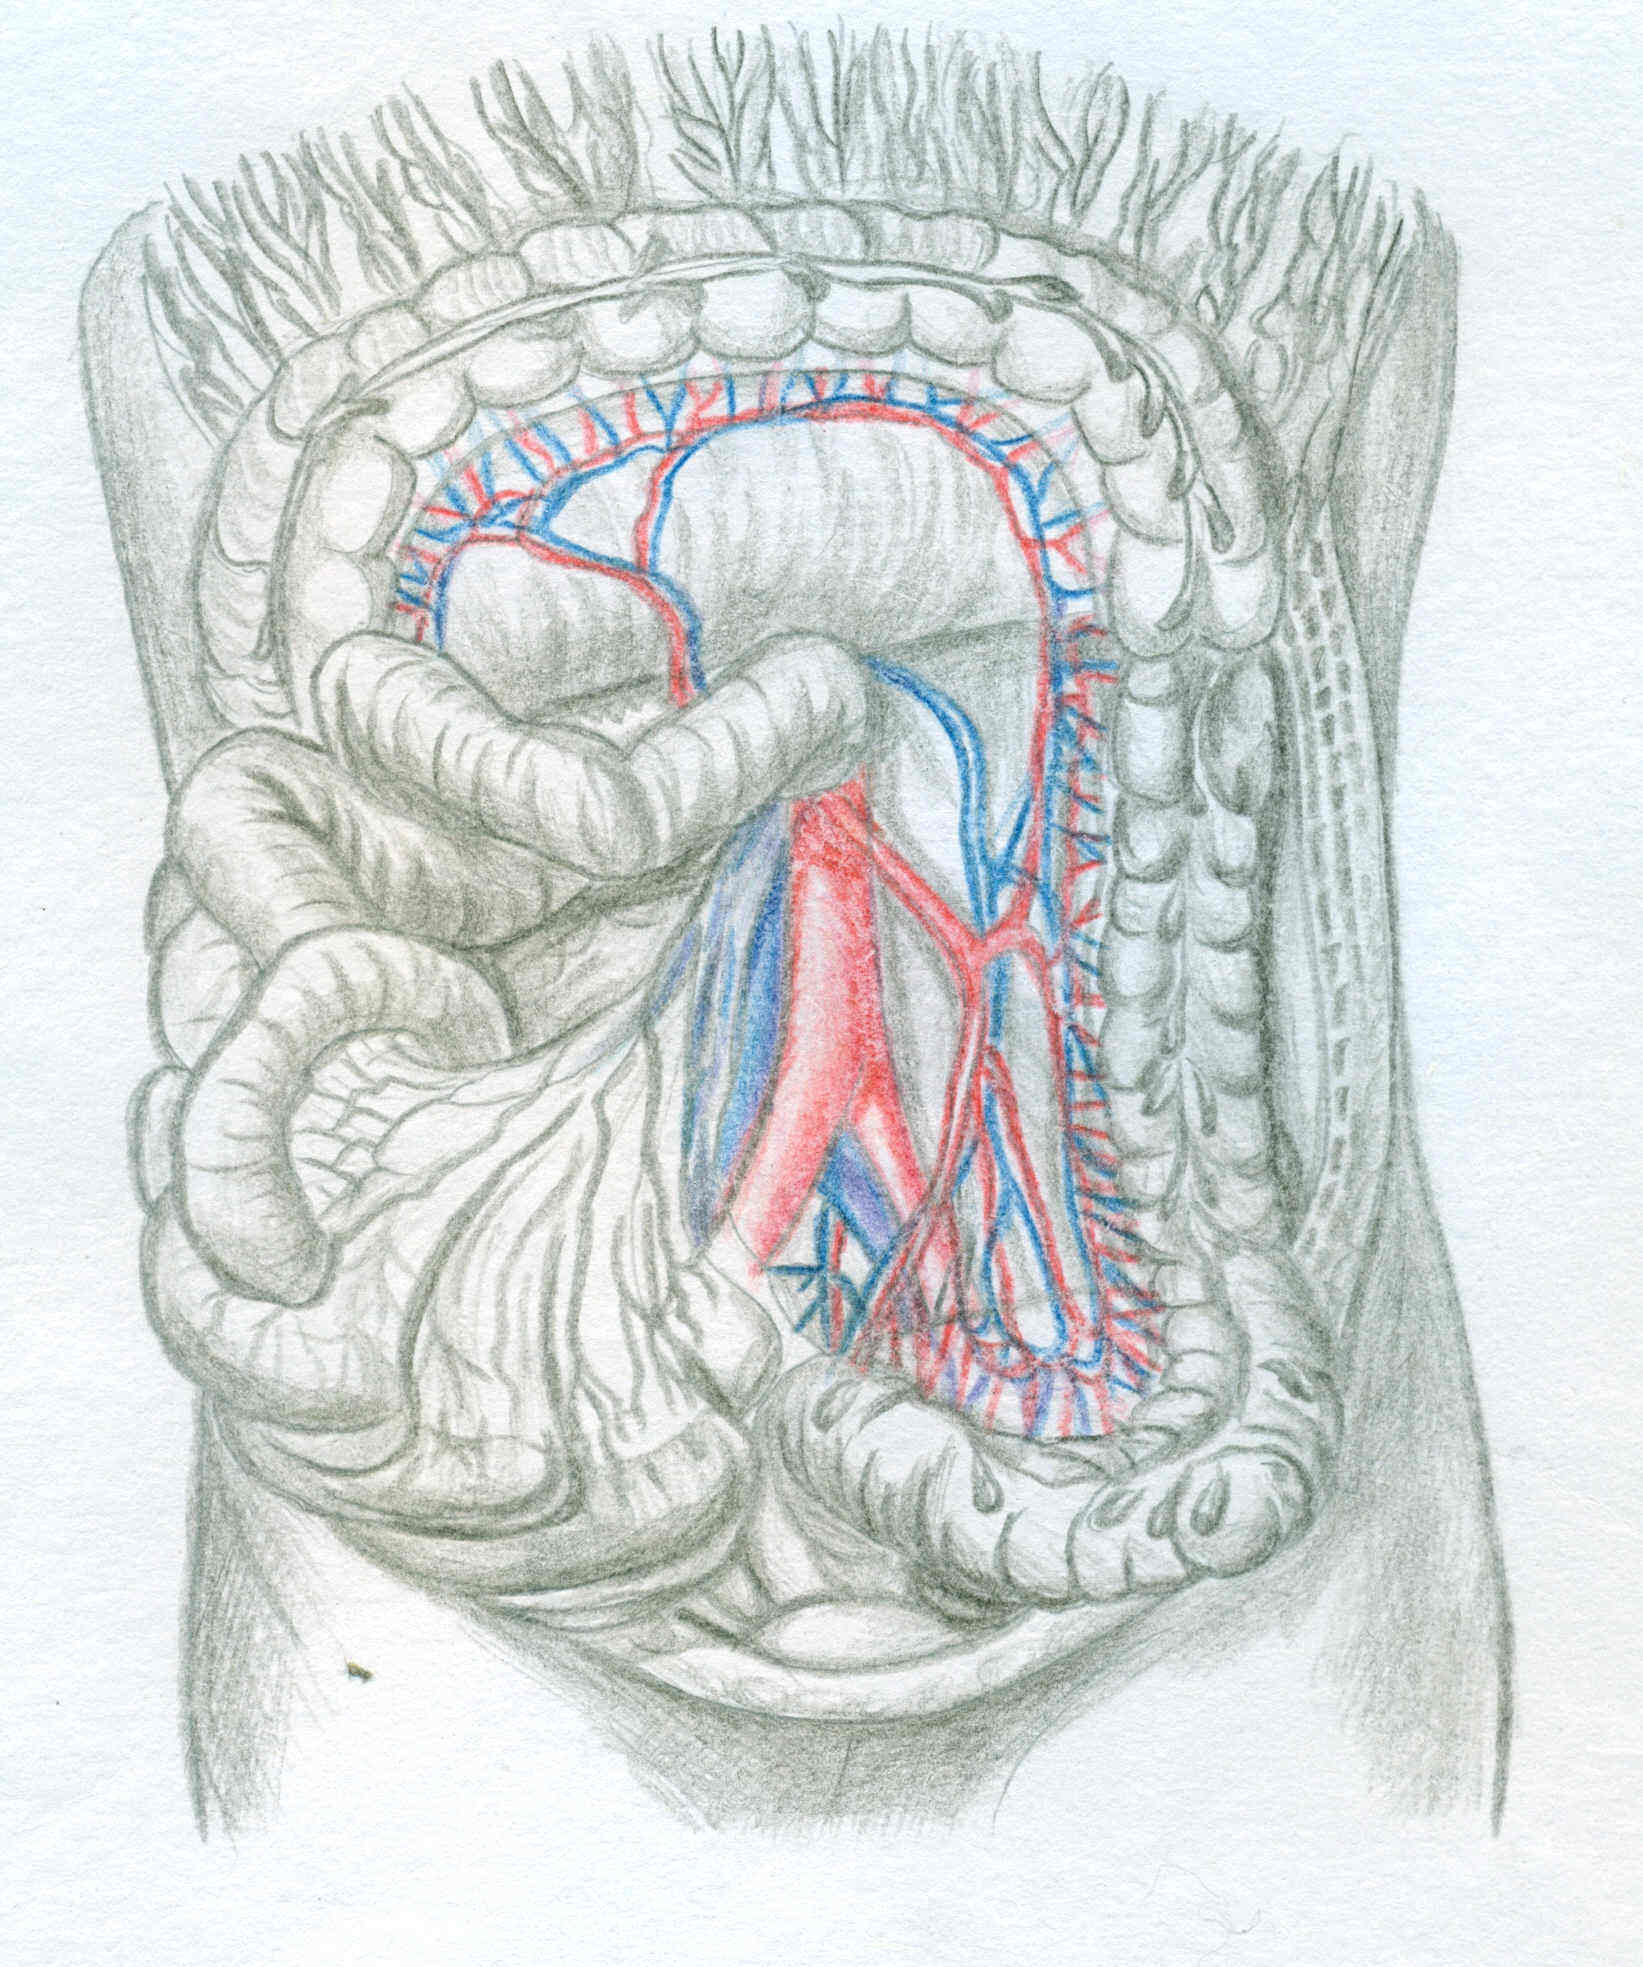 人体解剖示意图绘制图片